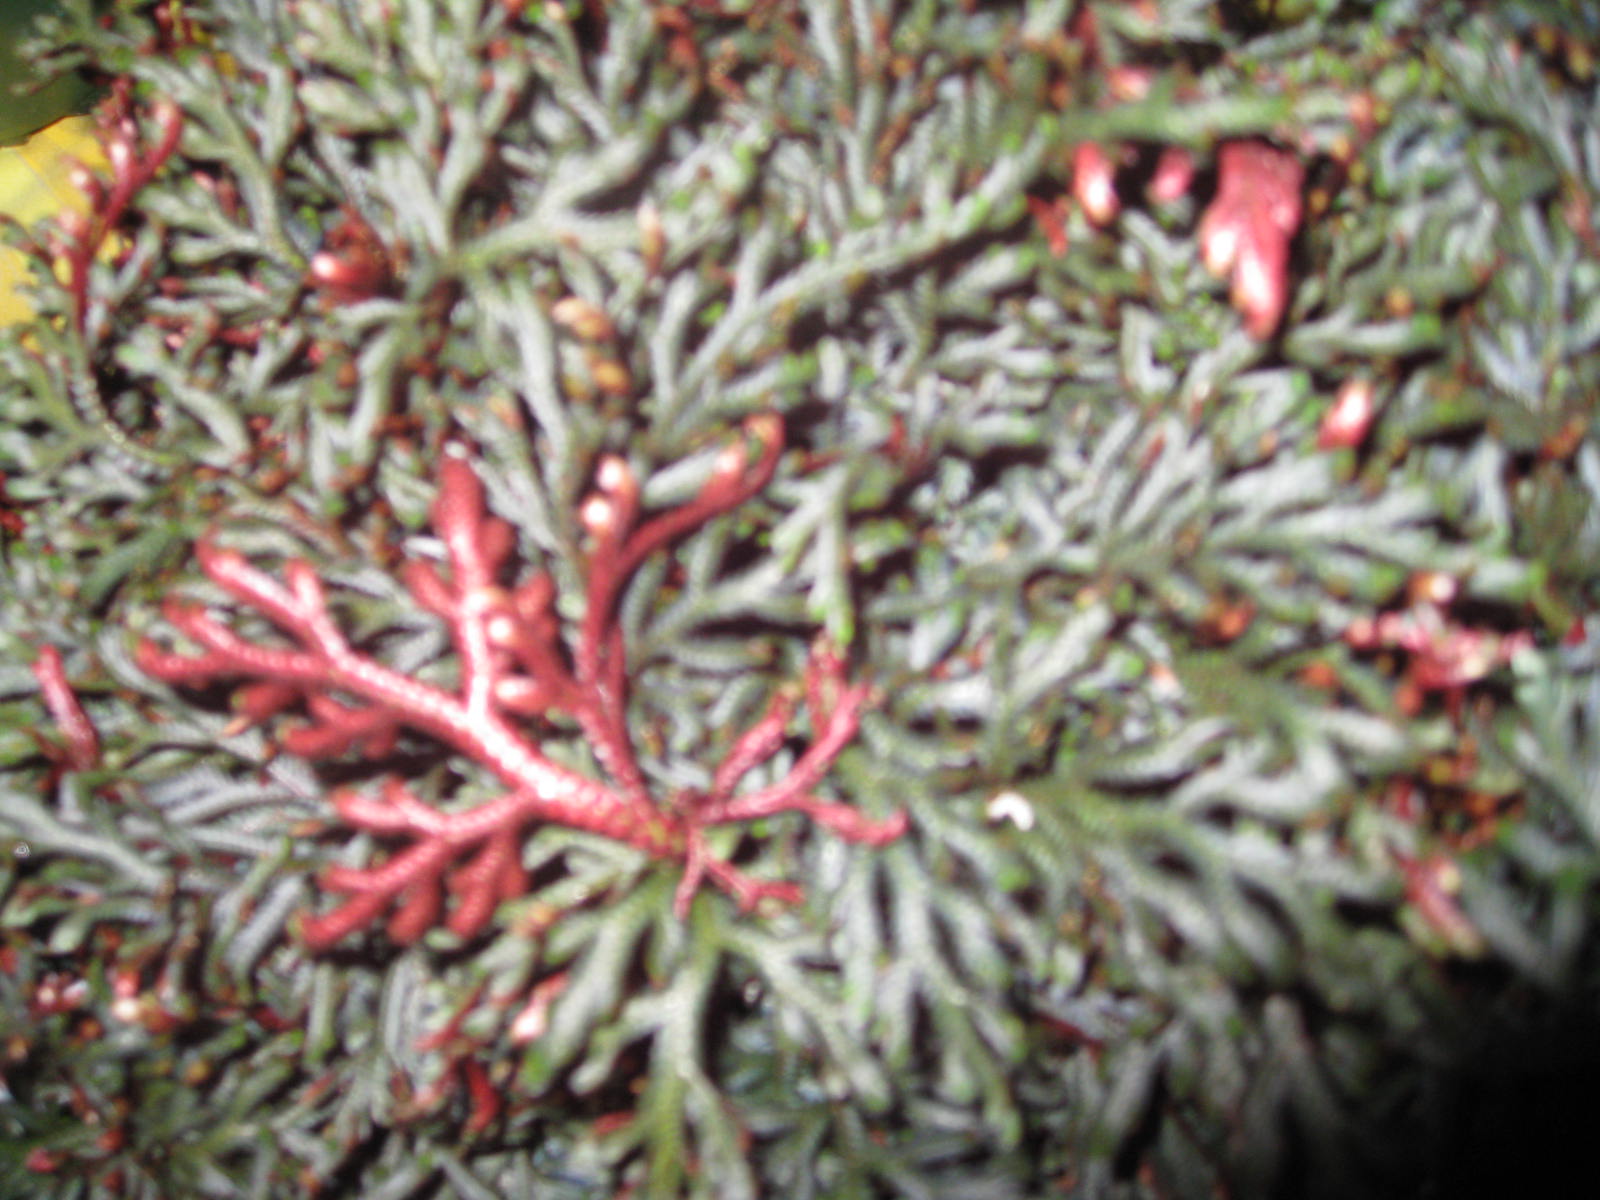 Selaginella erythropus 'Sanguinea' "Ruby Red Club Moss" / Selaginella erythropus 'Sanguinea' "Ruby Red Club Moss"